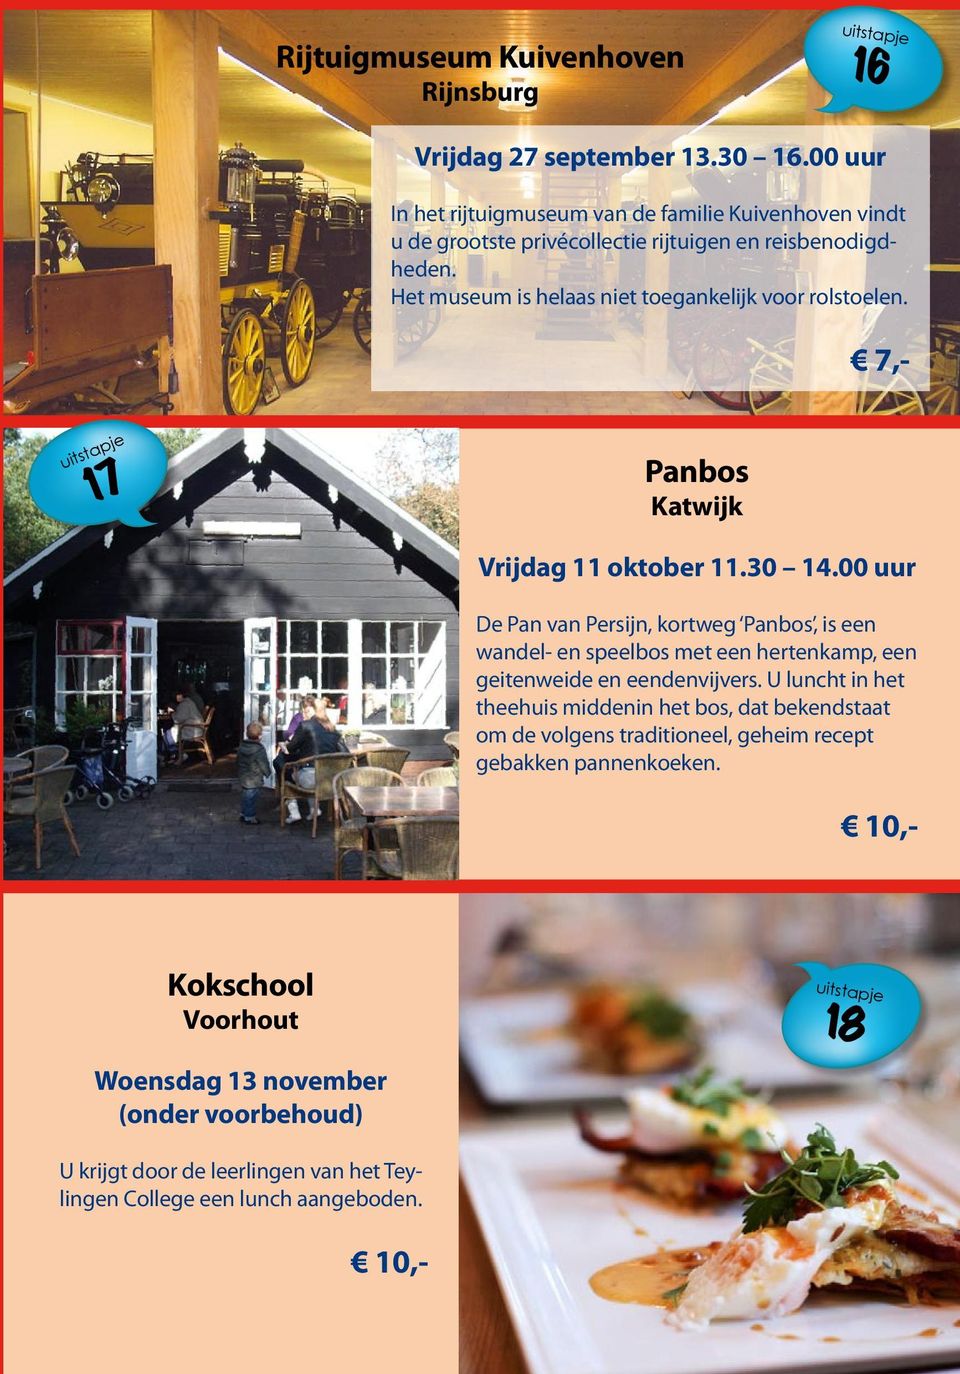 Het museum is helaas niet toegankelijk voor rolstoelen. 17 Panbos Katwijk Vrijdag 11 oktober 11.30 14.